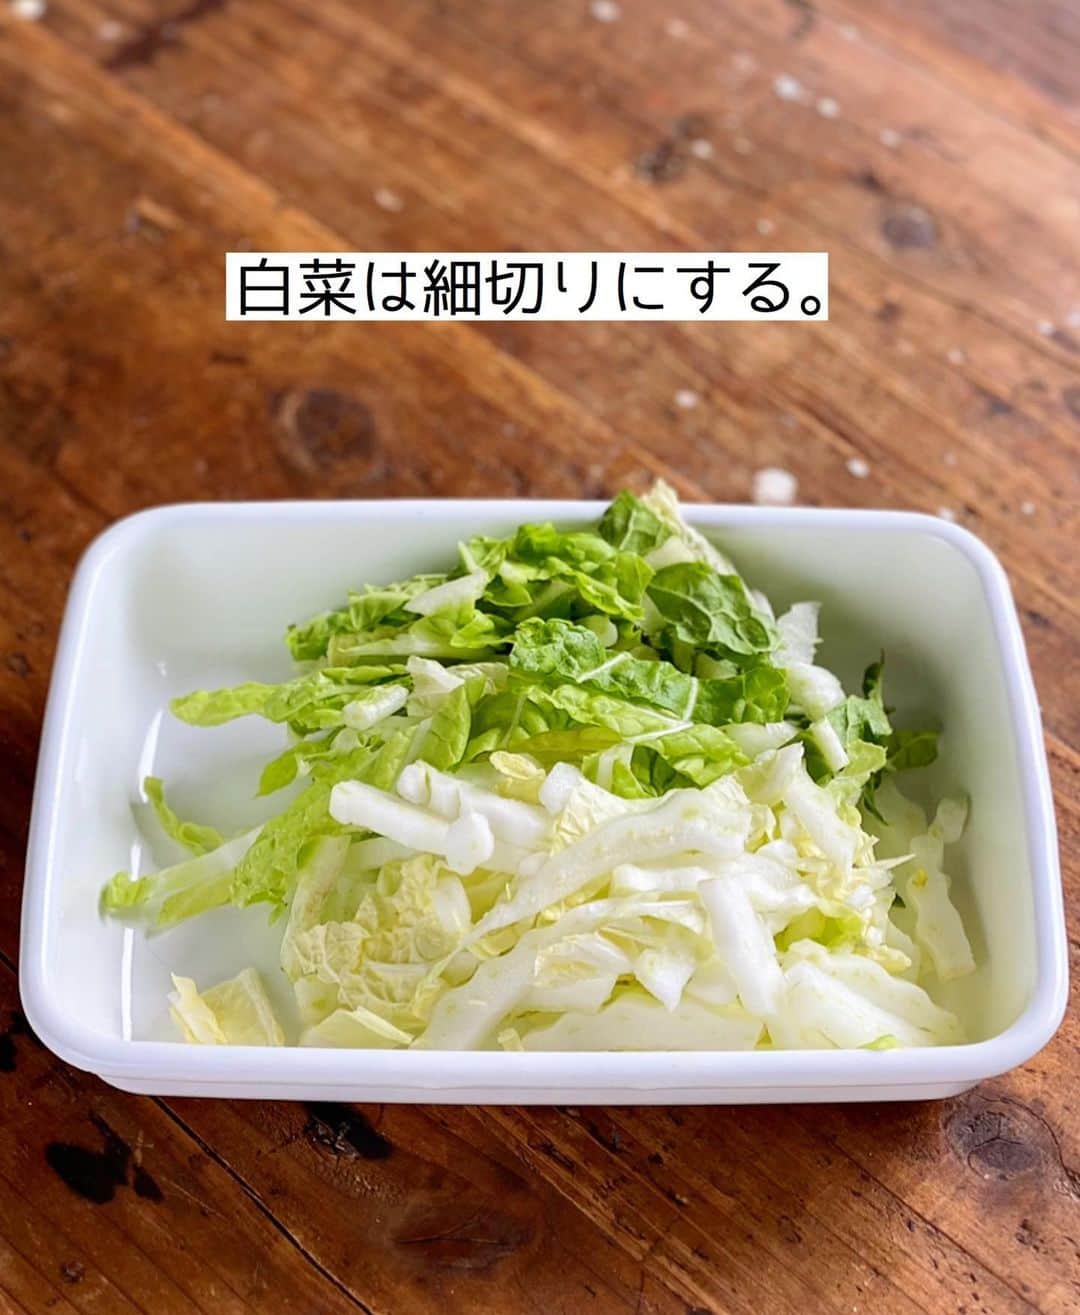 Mizuki【料理ブロガー・簡単レシピ】さんのインスタグラム写真 - (Mizuki【料理ブロガー・簡単レシピ】Instagram)「・﻿ 【#レシピ 】ーーーーーーーー﻿ ♡白菜入り坦々春雨スープ♡﻿ ーーーーーーーーーーーーーー﻿ ﻿ ﻿ ﻿ おはようございます(*^^*)﻿ ﻿ 今日ご紹介させていただくのは﻿ \\ 白菜入り坦々春雨スープ //﻿ ﻿ 春雨は戻さないから超簡単♡﻿ 更に練りごま不要でお手軽！﻿ 豆乳とごまをたっぷり加えて﻿ クリーミーに仕上げました♩﻿ ﻿ 寒い季節におすすめなので﻿ よかったらお試し下さいね(*^^*)﻿ ﻿ ﻿ ﻿ ＿＿＿＿＿＿＿＿＿＿＿＿＿＿＿＿＿＿＿＿﻿ 【2人分】﻿ 豚ひき肉...100g﻿ 白菜...100g﻿ 春雨...20g﻿ ごま油...小1﻿ 豆板醤...小1/2﻿ ●水...200ml﻿ ●味噌...小2﻿ ●鶏がらスープ・醤油...各小1﻿ 豆乳...150ml﻿ すりごま...大1.5﻿ (好みで)ラー油...適量﻿ ﻿ 1.白菜は細切りにする。﻿ 2.鍋にごま油、豆板醤、ひき肉を入れ、中火にかけて炒める。火が通ったら●、白菜、春雨を加え、混ぜながら5分煮る。﻿ 3.豆乳とすりごまを加え、沸騰直前まで温める。仕上げにラー油をかける。﻿ ￣￣￣￣￣￣￣￣￣￣￣￣￣￣￣￣￣￣￣￣﻿ ﻿ ﻿ ﻿ ﻿ 《ポイント》﻿ ♦︎春雨は戻さず乾燥のまま加えています♩﻿ ♦︎無調整豆乳を使用しています♩﻿ ♦︎豆板醤なしで作ると小さなお子さんも食べられます♩大人は仕上げのラー油で好みの辛さにして下さい♩﻿ ﻿ ﻿ ﻿ ﻿ ﻿ ﻿ ﻿ 📕新刊発売中📕﻿ 【ラクしておいしい！#1品晩ごはん 】﻿ ￣￣￣￣￣￣￣￣￣￣￣￣￣￣￣￣￣﻿ 私たちだってヘトヘトな日がある•••﻿ 毎日何品も作っていられない•••﻿ もうごはんに悩みたくない😢﻿ そんな時、1品ごはんはいかがでしょう？﻿ というご提案です✨﻿ ﻿ 【1品ごはん】は﻿ 副菜いらずで全てがシンプル！﻿ ￣￣￣￣￣￣￣￣￣￣￣￣￣￣￣￣￣￣﻿ 一品つくるだけでいいから﻿ 献立を考えなくてよし！﻿ ￣￣￣￣￣￣￣￣￣￣￣￣￣￣￣￣￣￣﻿ 悩まない、疲れない、﻿ 気力や時間がなくてもなんとかなる！﻿ ￣￣￣￣￣￣￣￣￣￣￣￣￣￣￣￣￣￣﻿ そんな頼りになる﻿ 便利なお助けごはんです☺️💕﻿ (ハイライトに🔗貼っています✨)﻿ ￣￣￣￣￣￣￣￣￣￣￣￣￣￣￣￣￣﻿ ﻿ ﻿ ﻿ ﻿ ﻿ ⭐️発売中⭐️﻿ ＿＿＿＿＿＿＿＿＿＿＿＿＿＿＿＿＿＿﻿ しんどくない献立、考えました♩﻿ \15分でいただきます/﻿ 📕#Mizukiの2品献立 📕﻿ ﻿ 和食をもっとカジュアルに♩﻿ \毎日のごはんがラクになる/﻿ 📘#Mizukiの今どき和食 📘﻿ ﻿ ホケミレシピの決定版♩﻿ \はじめてでも失敗しない/﻿ 📙#ホットケーキミックスのお菓子 📙﻿ ﻿ NHKまる得マガジンテキスト☆﻿ ホットケーキミックスで﻿ 📗絶品おやつ&意外なランチ📗﻿ ￣￣￣￣￣￣￣￣￣￣￣￣￣￣￣￣￣￣﻿ ﻿ ﻿ ﻿ ＿＿＿＿＿＿＿＿＿＿＿＿＿＿＿＿＿＿﻿ レシピを作って下さった際や﻿ レシピ本についてのご投稿には﻿ タグ付け( @mizuki_31cafe )して﻿ お知らせいただけると嬉しいです😊💕﻿ ￣￣￣￣￣￣￣￣￣￣￣￣￣￣￣￣￣￣﻿ ﻿ ﻿ ﻿ ﻿ #坦々スープ#白菜#春雨スープ#豆乳#Mizuki#簡単レシピ#時短レシピ#節約レシピ#料理#フーディーテーブル#マカロニメイト#おうちごはん#デリスタグラマー#料理好きな人と繋がりたい#おうちごはんlover#写真好きな人と繋がりたい#foodpic#cooking#recipe#lin_stagrammer#foodporn#yummy#f52grams#白菜入り坦々春雨スープm」1月8日 7時06分 - mizuki_31cafe